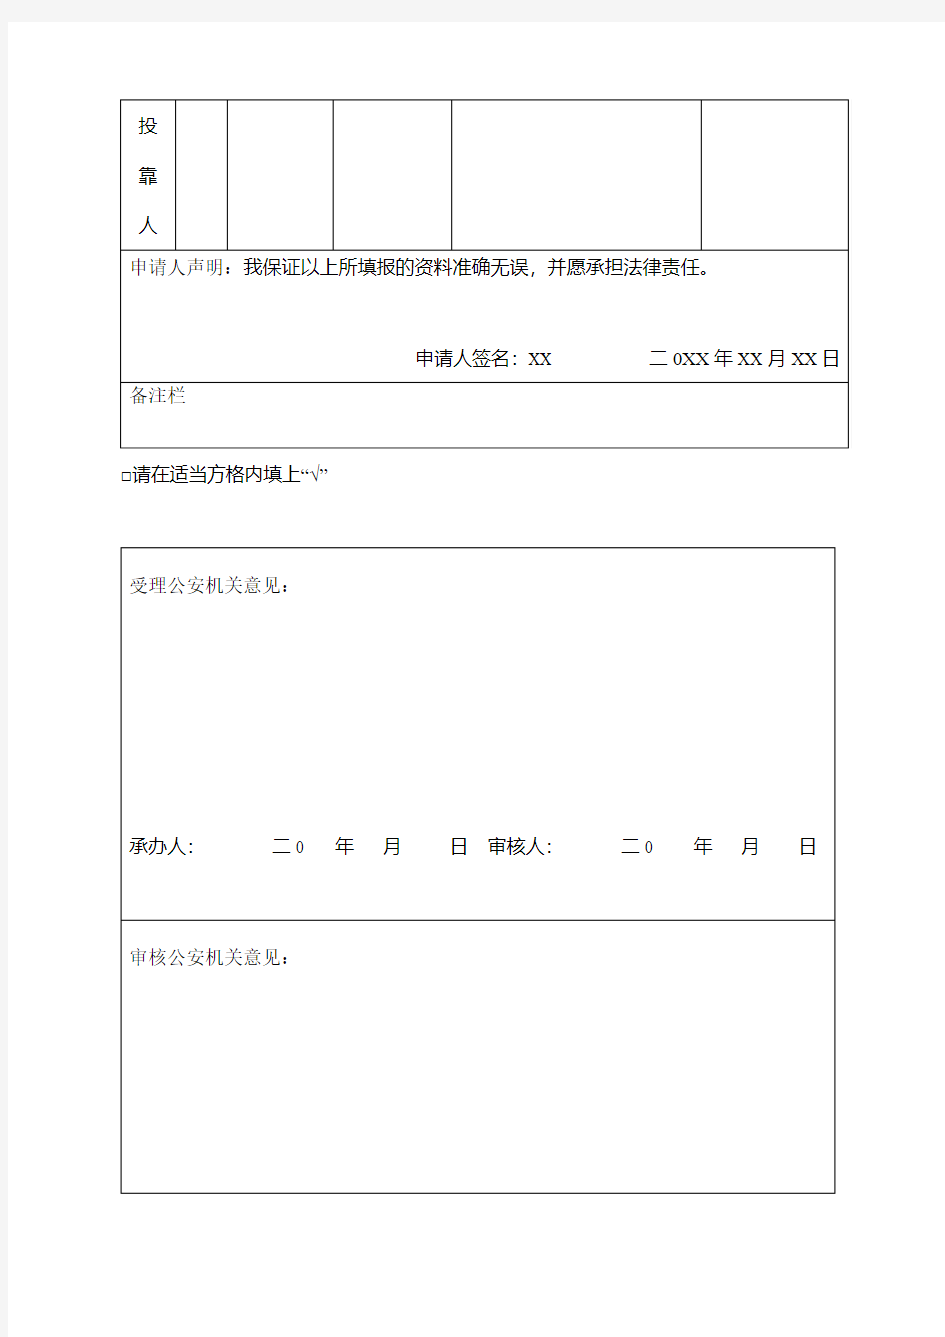 台湾居民定居申请表(范本)